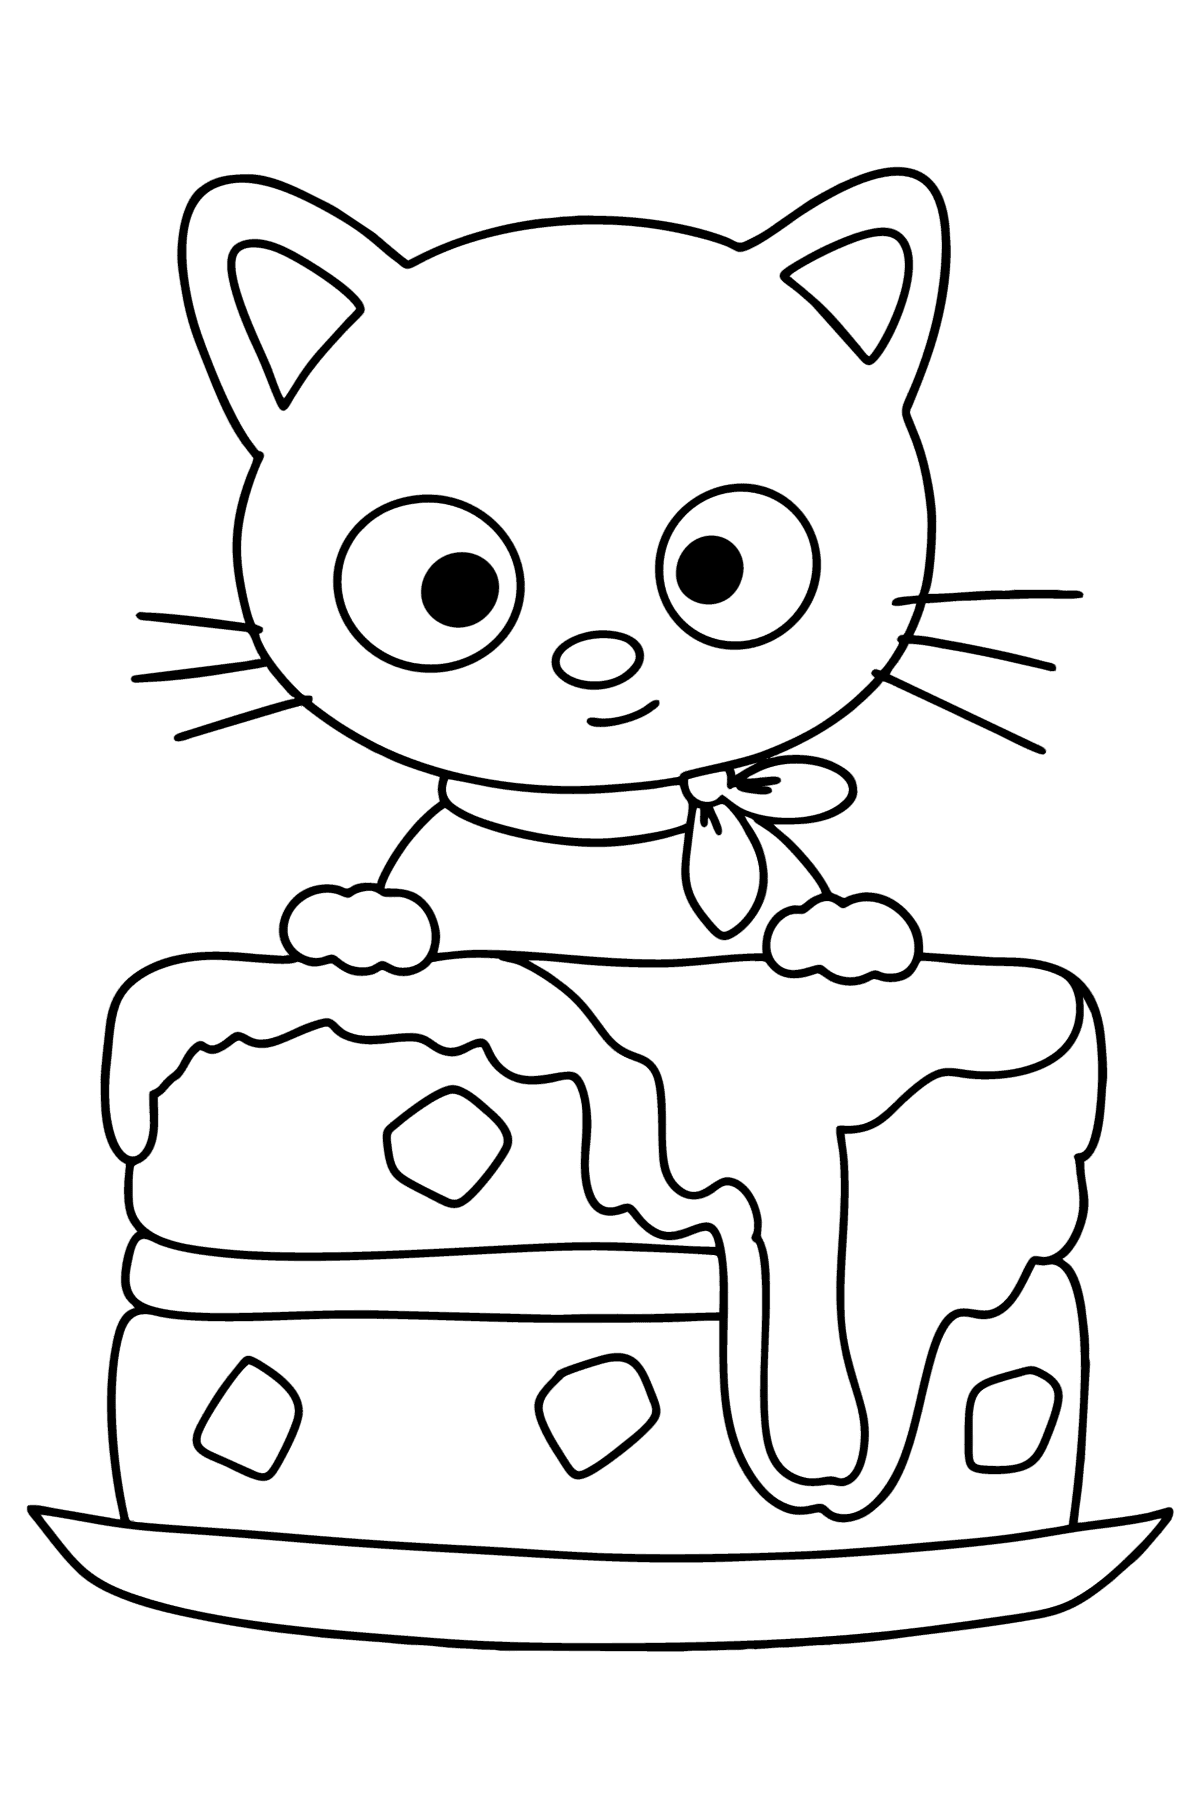 Kleurplaat Hello Kitty Chococat - kleurplaten voor kinderen